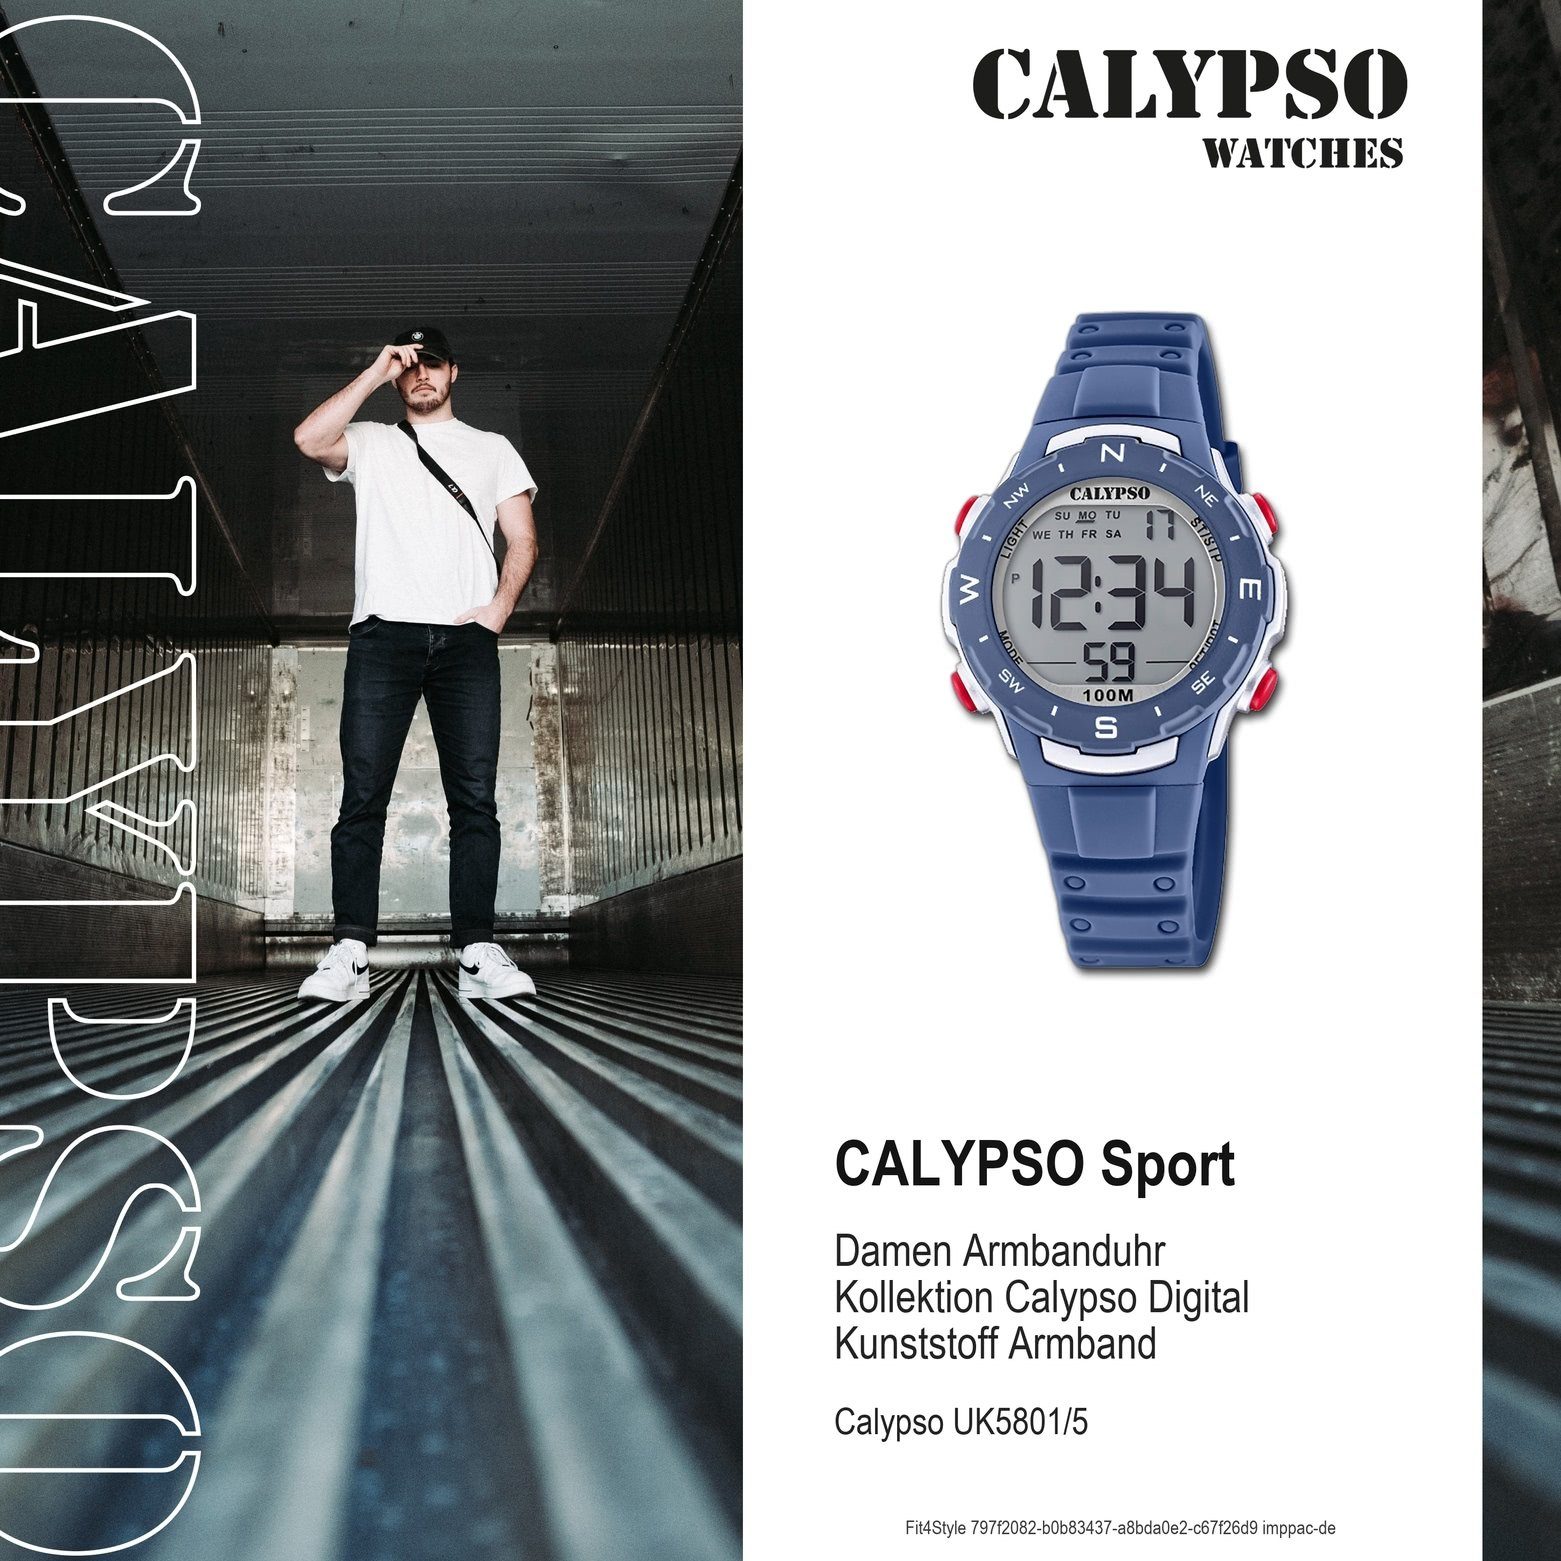 Herren Uhren CALYPSO WATCHES Digitaluhr UK5801/5 Calypso Unisex Uhr Digital K5801/5, Damen, Herrenuhr rund, mittel (ca. 35mm), K